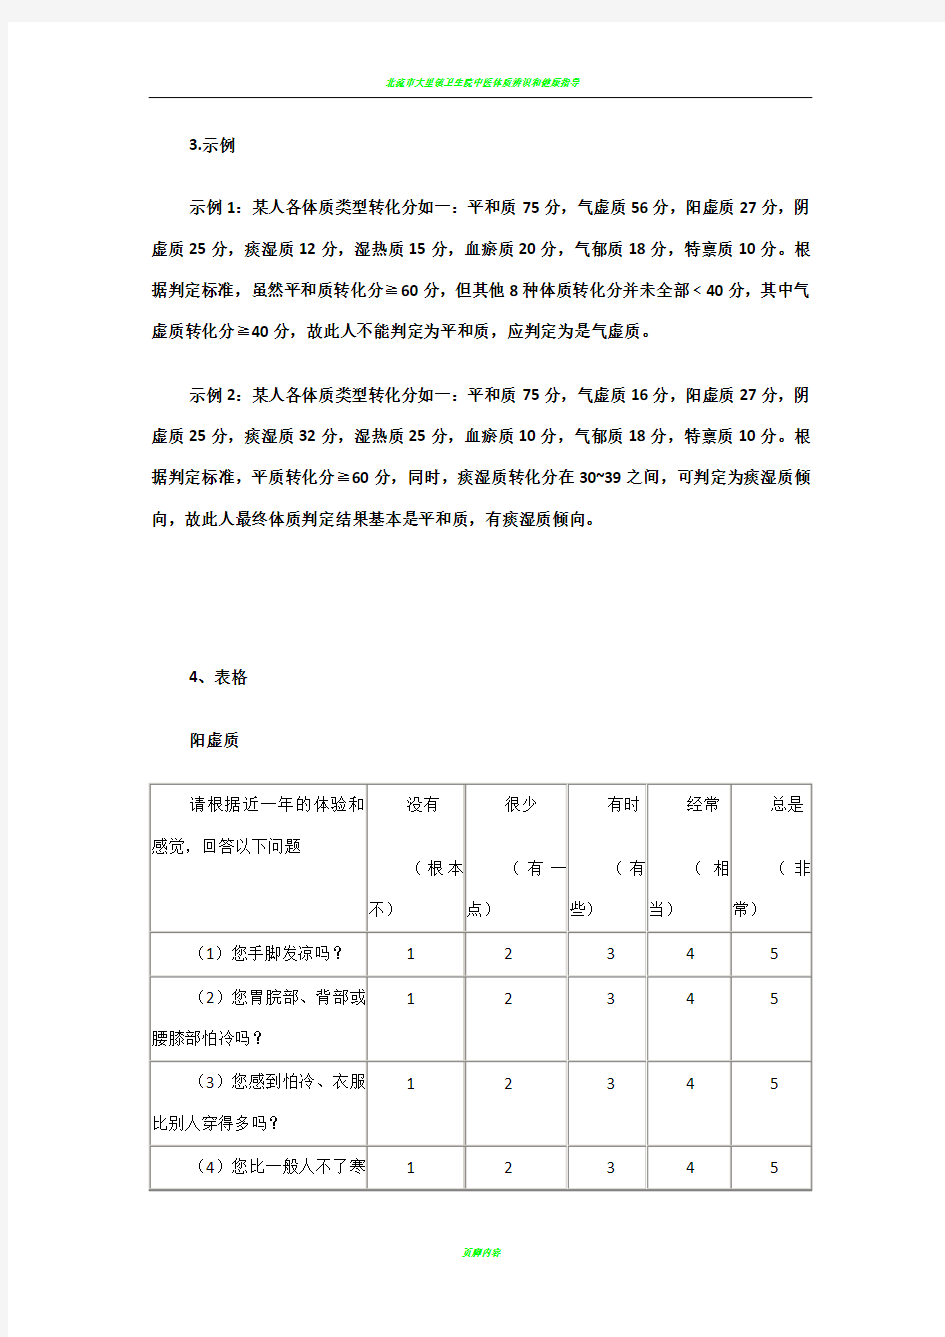 中医体质辨识标准(评分表)